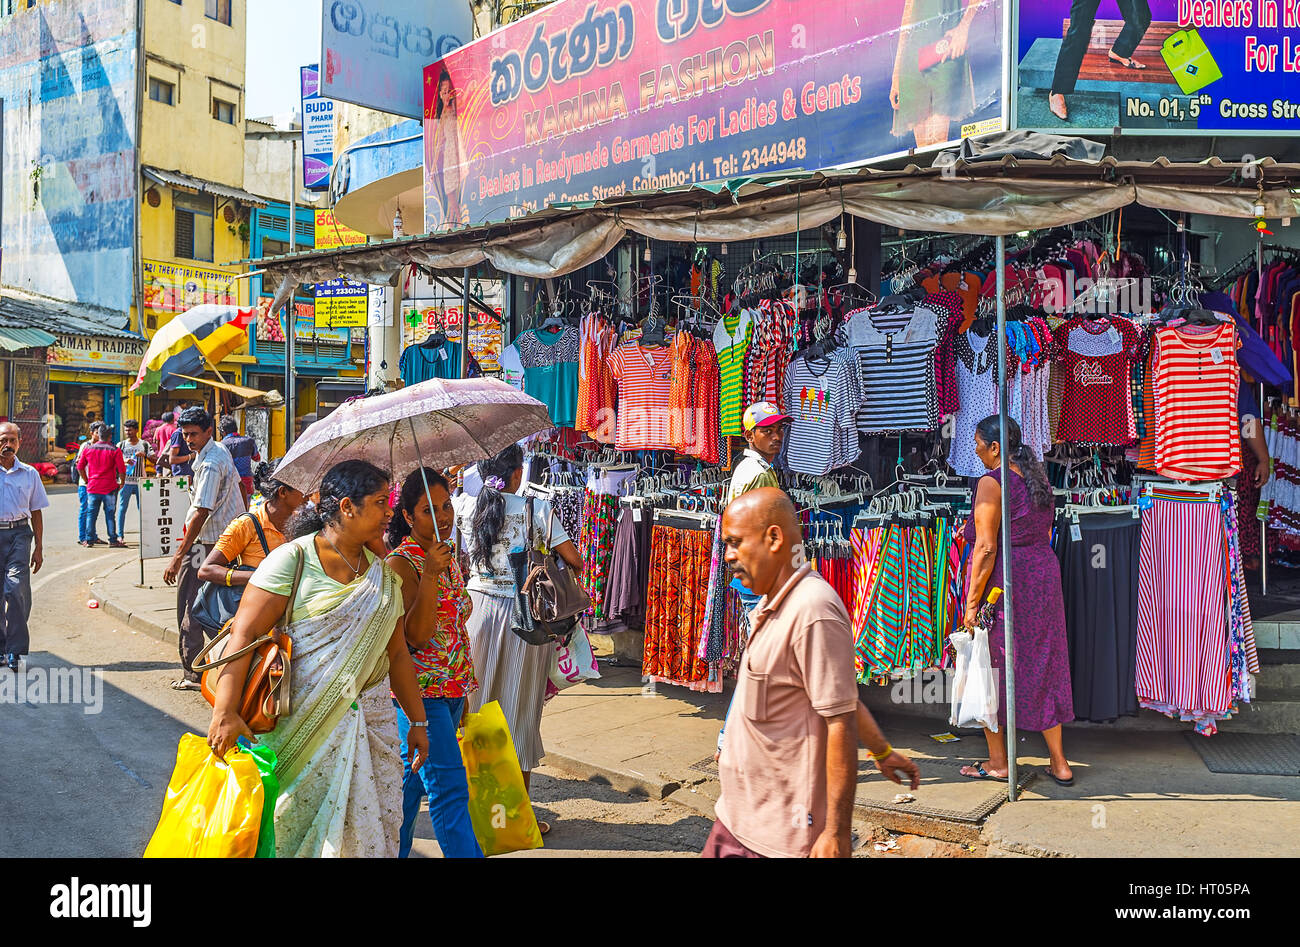 COLOMBO, SRI LANKA - 6 dicembre 2016: i vestiti a buon mercato mercato del 5° Cross Street di Pettah quartiere attira la gente del posto e i turisti in visita alla città Foto Stock